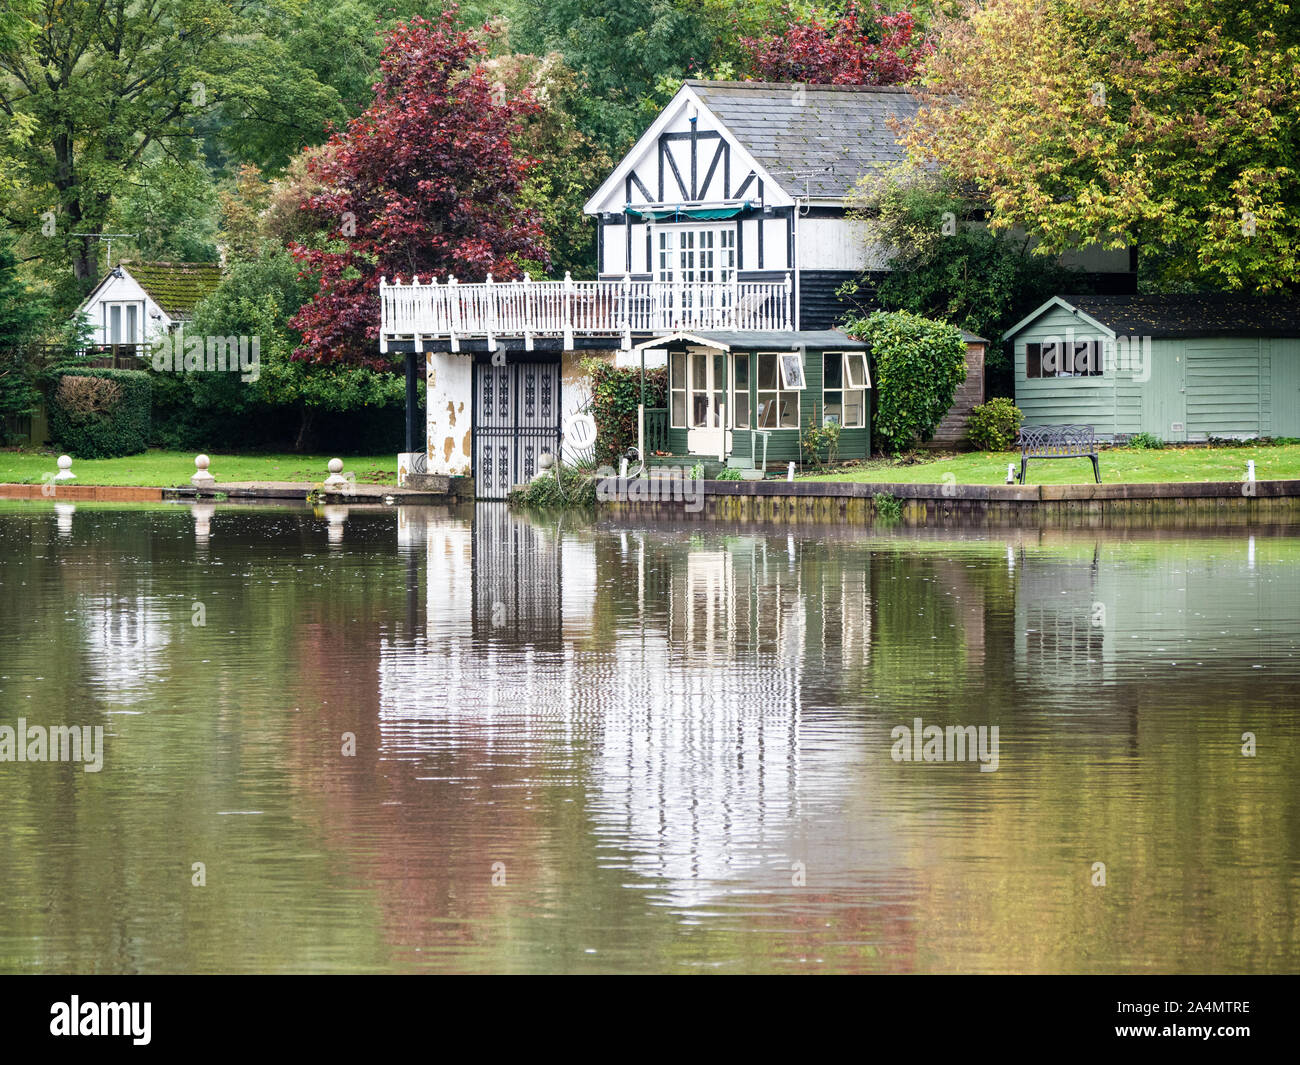 House with Boathouse, Autumn Landscape, River Thames, Caversham, Reading, Berkshire, England, UK, GB. Stock Photo